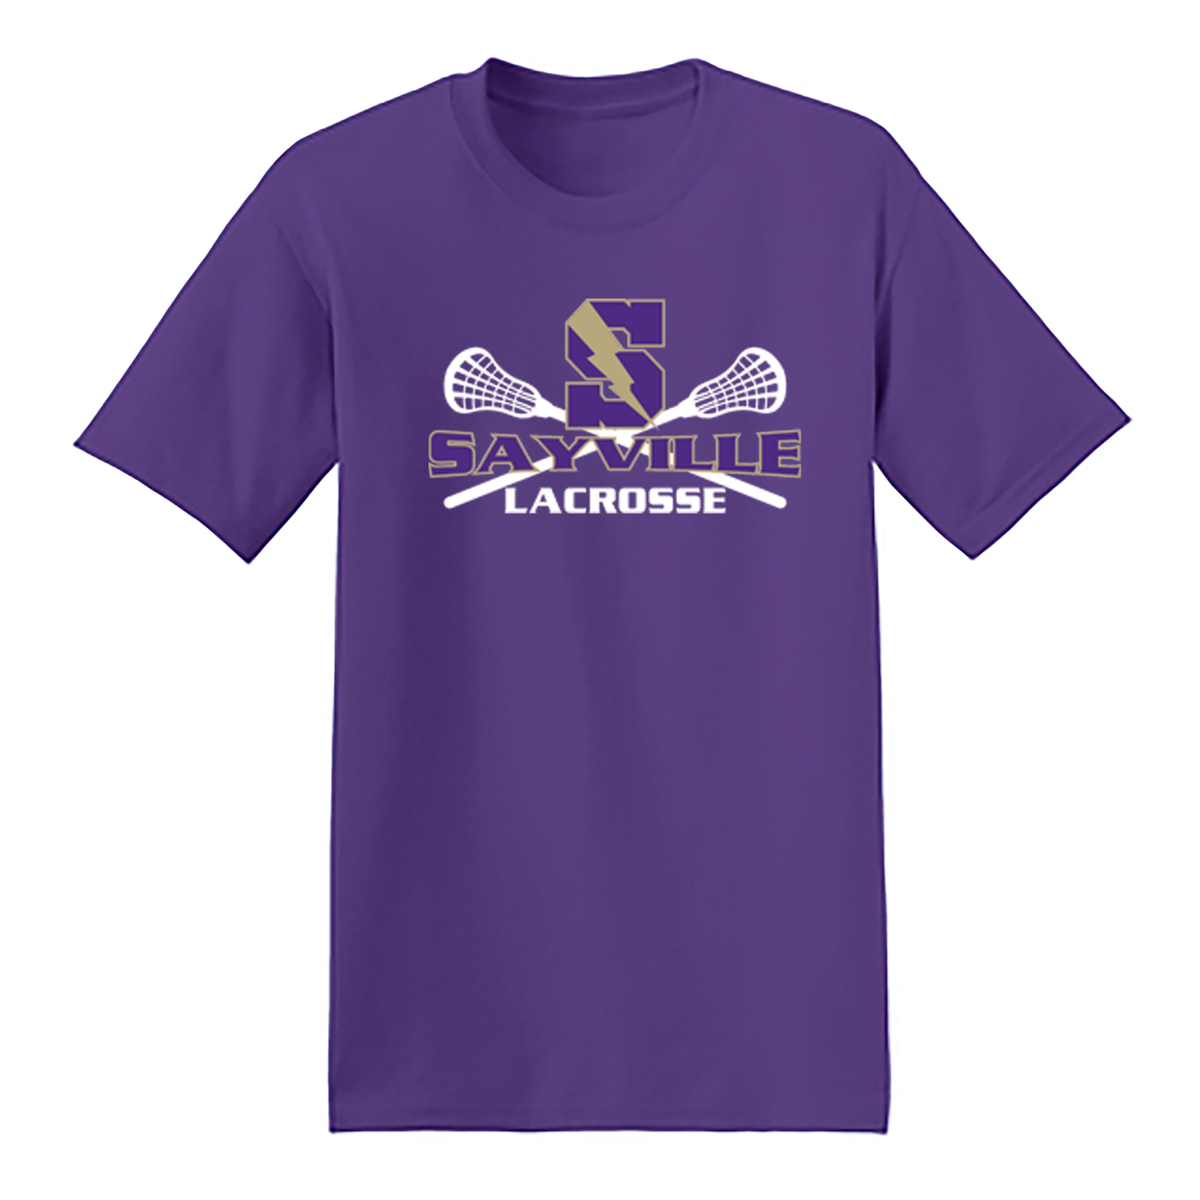 Sayville Lacrosse T-Shirt